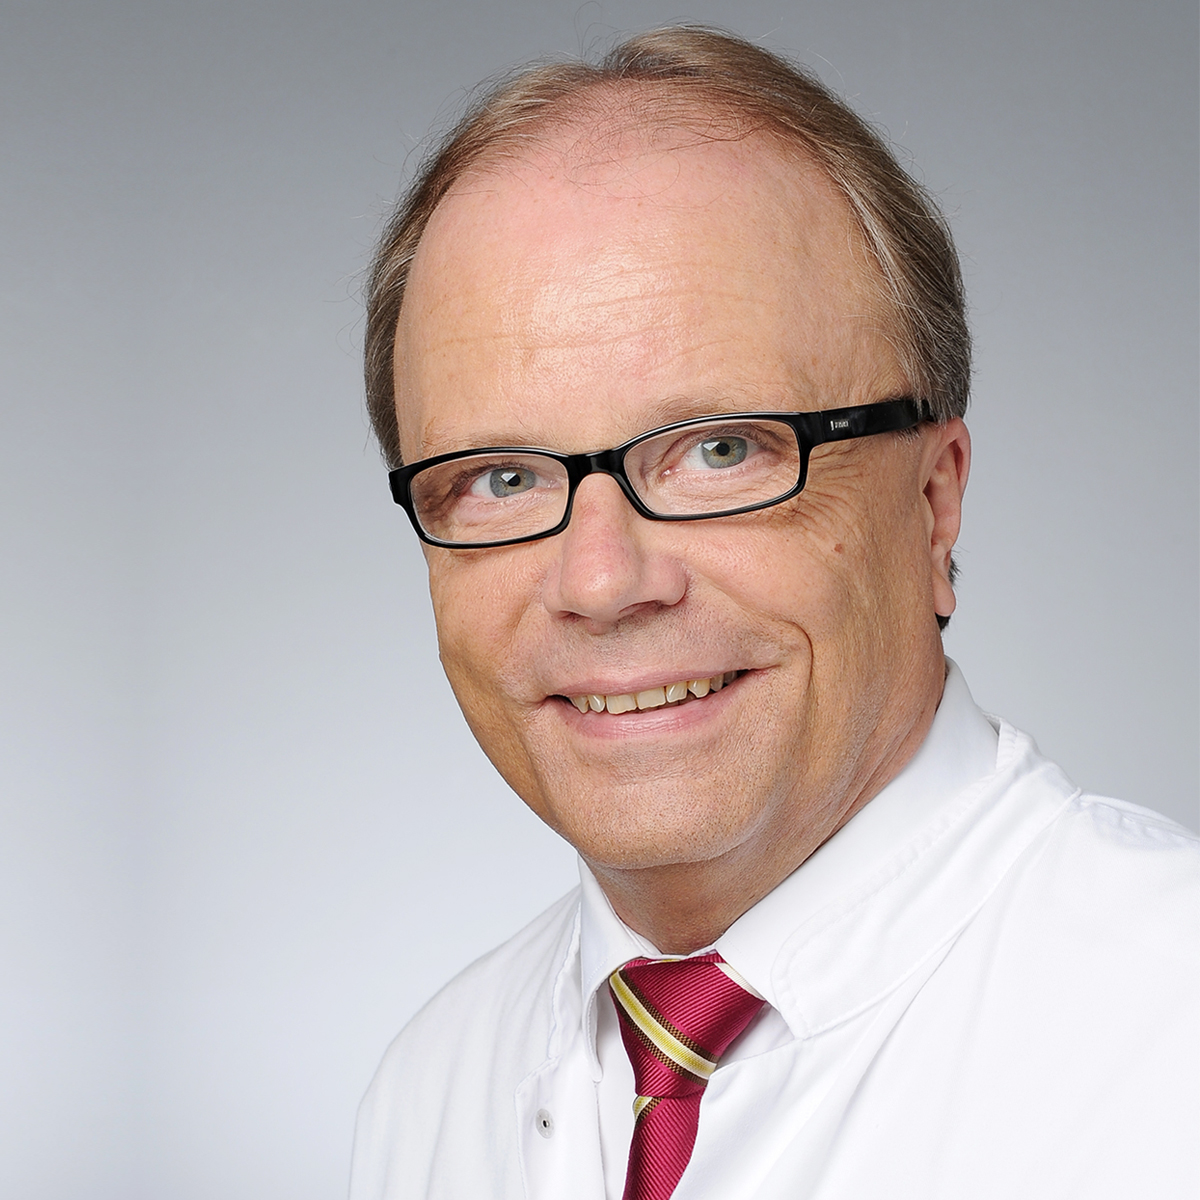 Prof. Dr. med. Bernd W. Böttiger